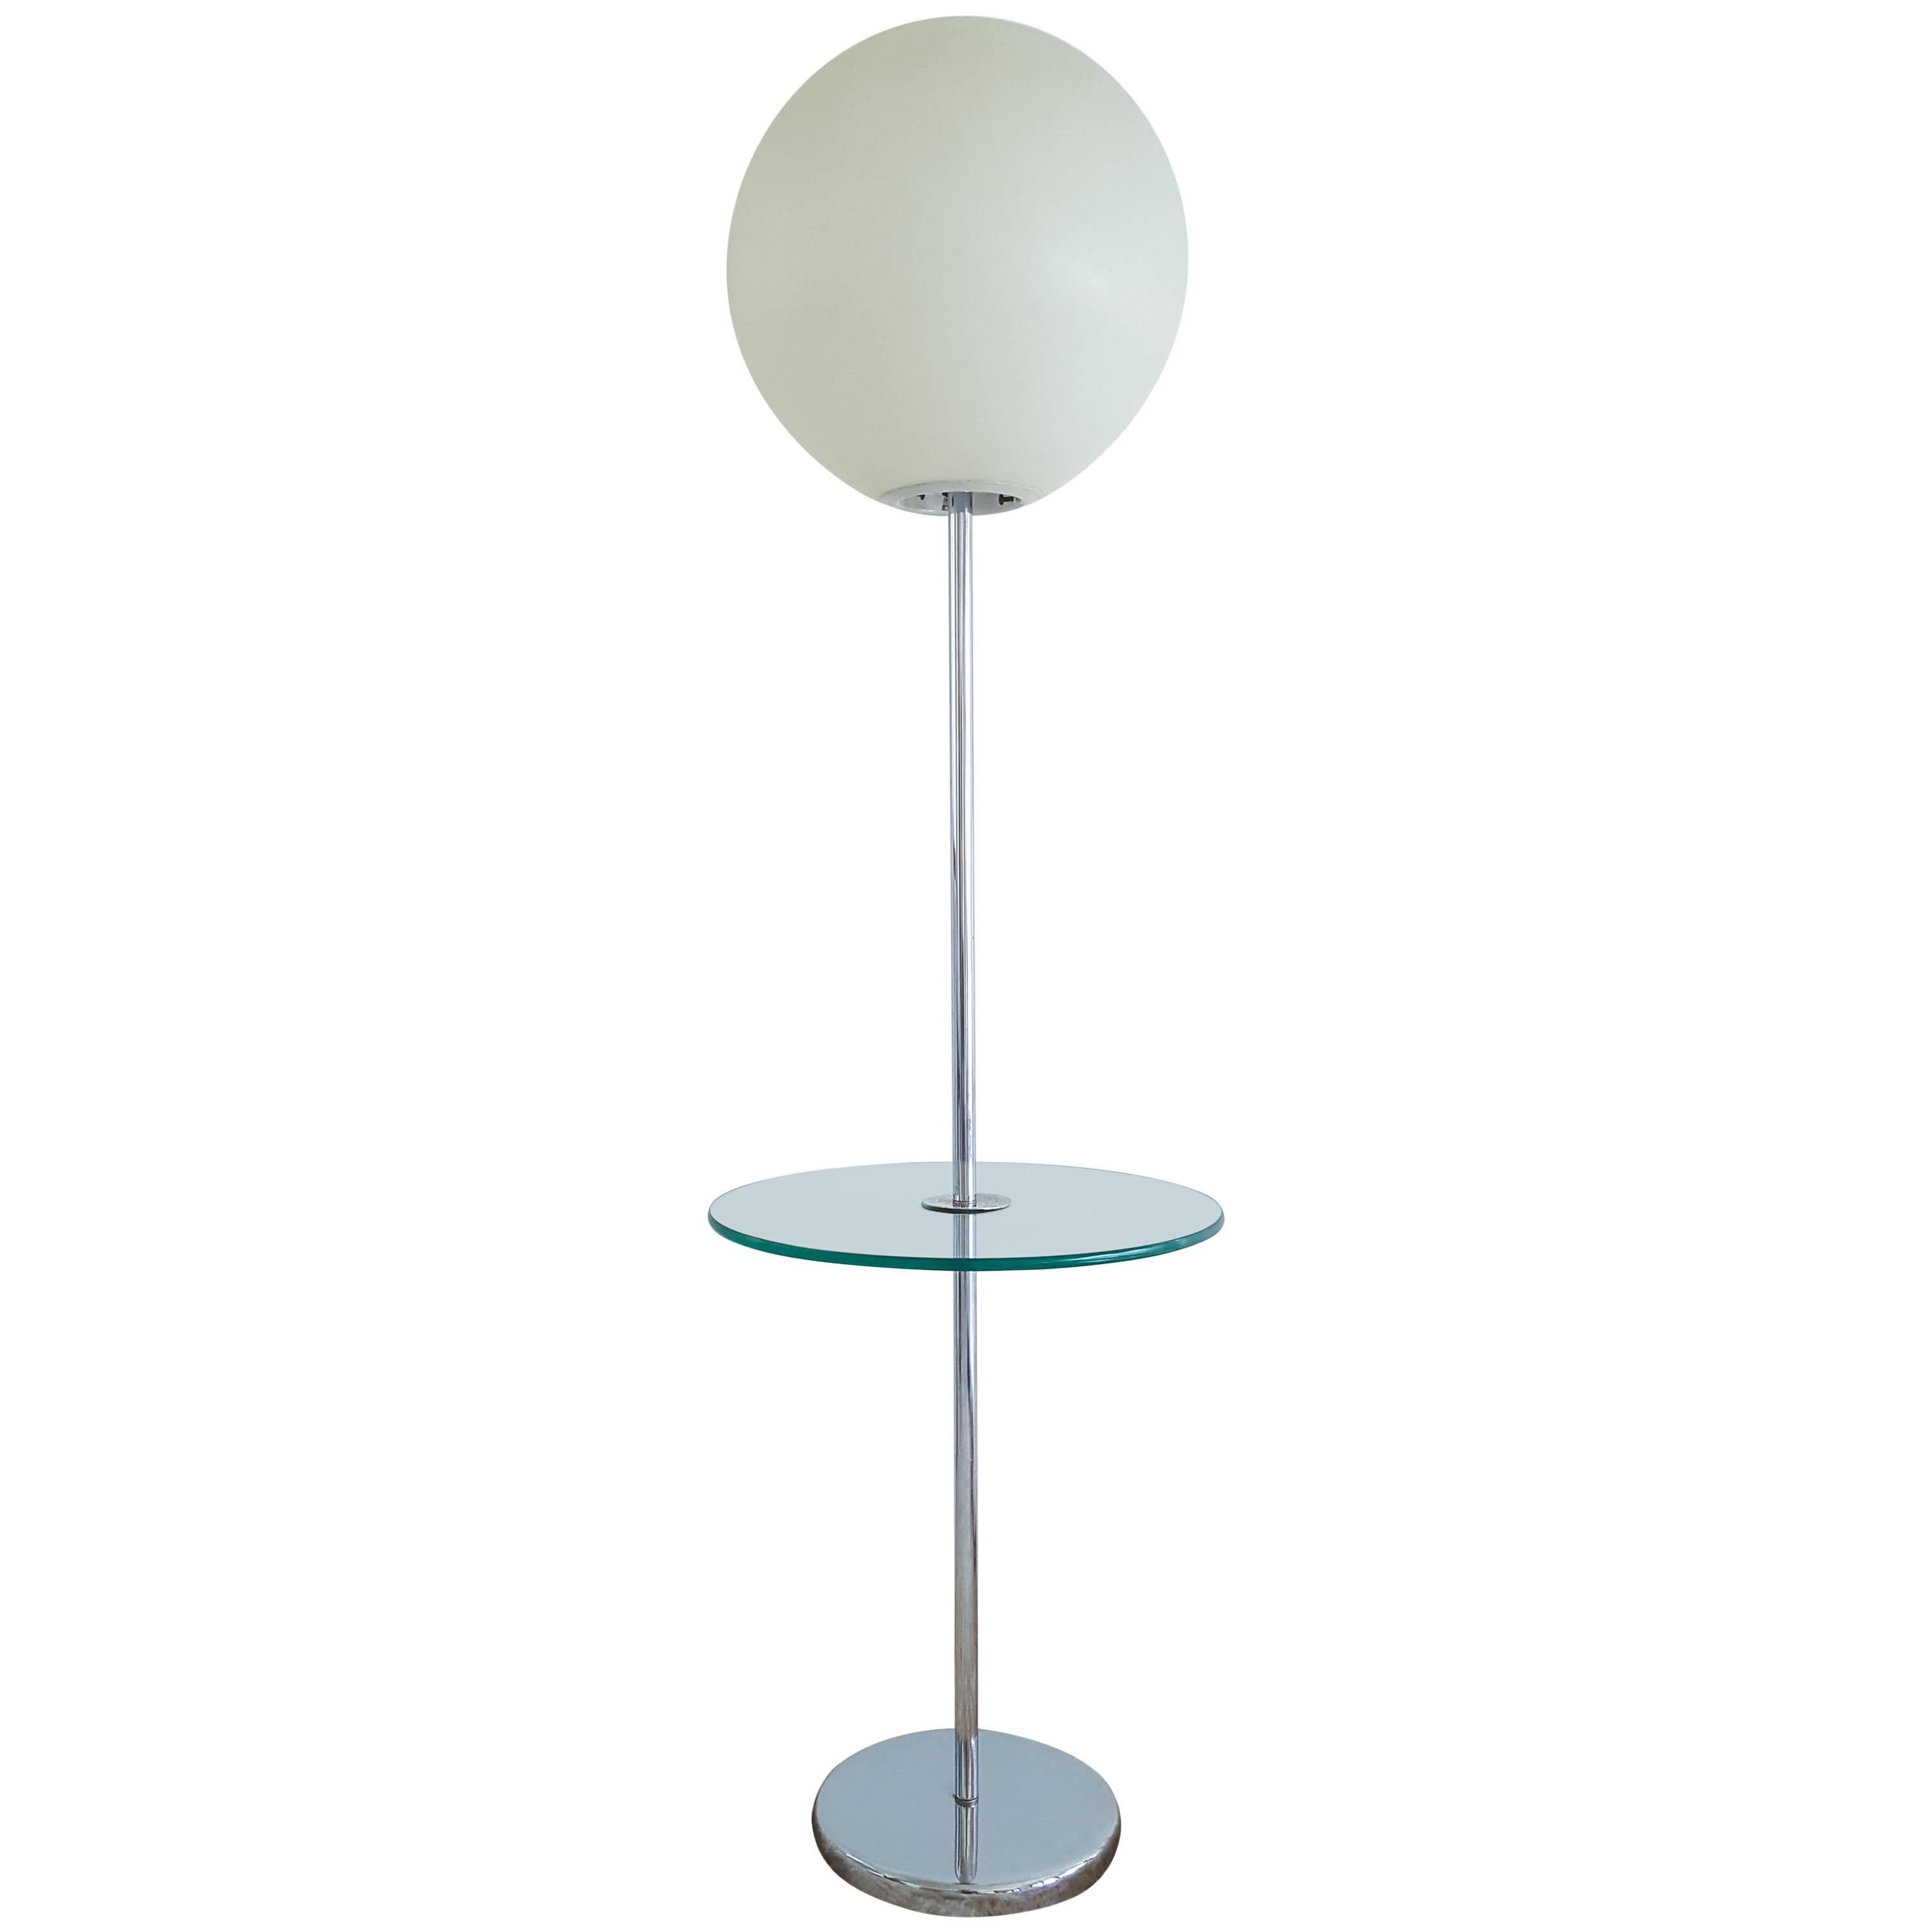 Robert Sonneman Lollipop Floor Lamp with Glass Table